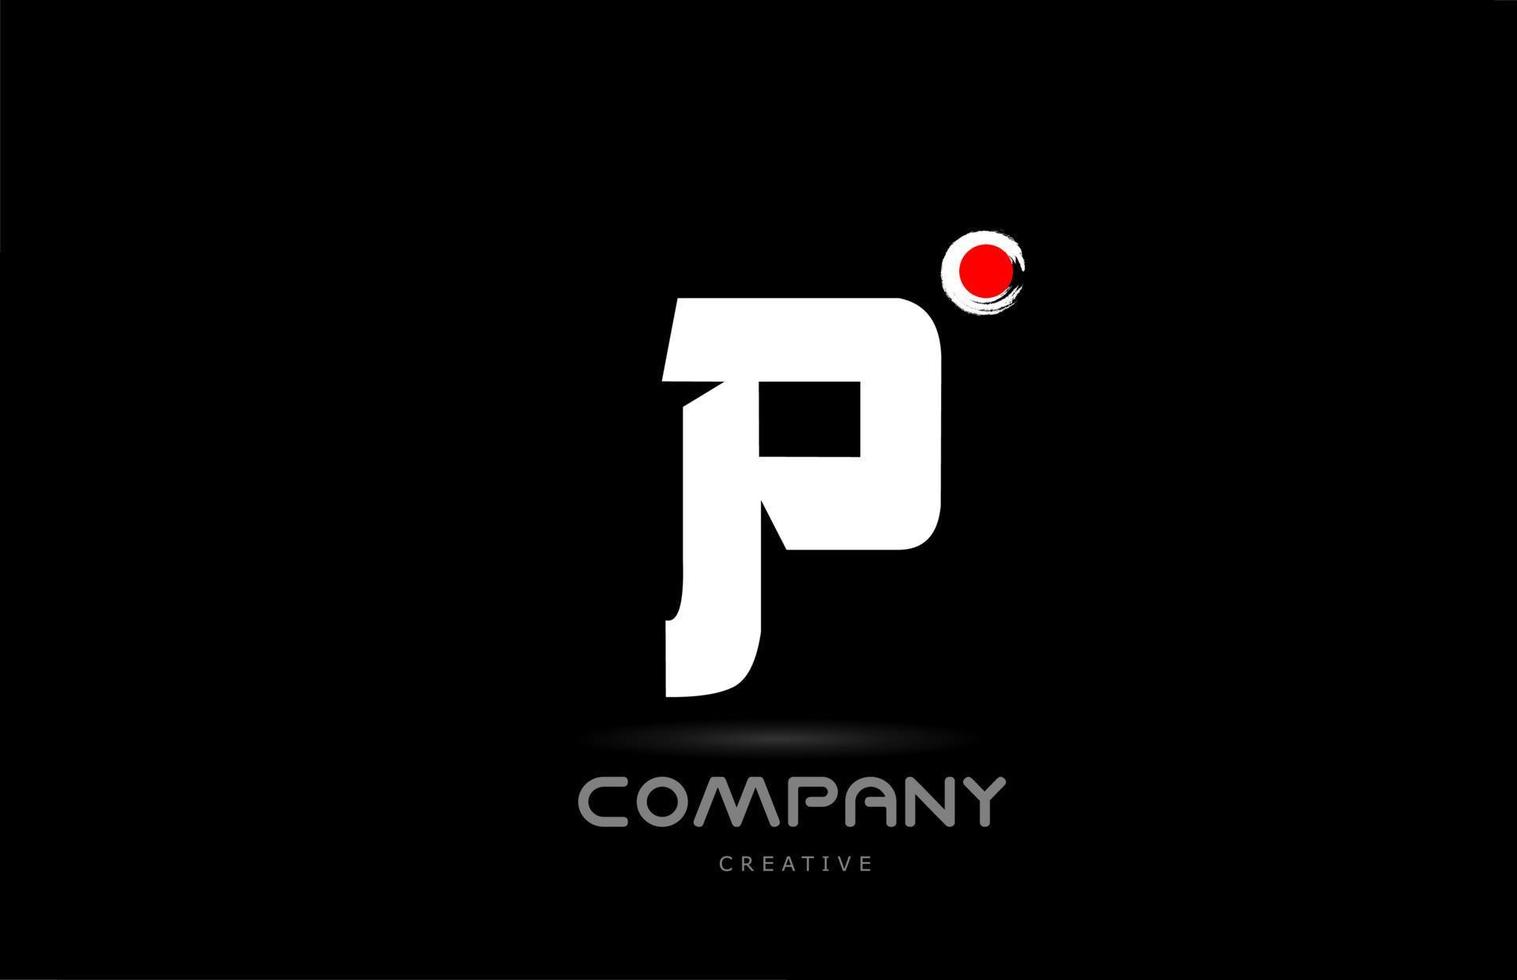 p diseño de icono de logotipo de letra del alfabeto en blanco y negro con letras de estilo japonés. plantilla creativa para negocios y empresas. vector